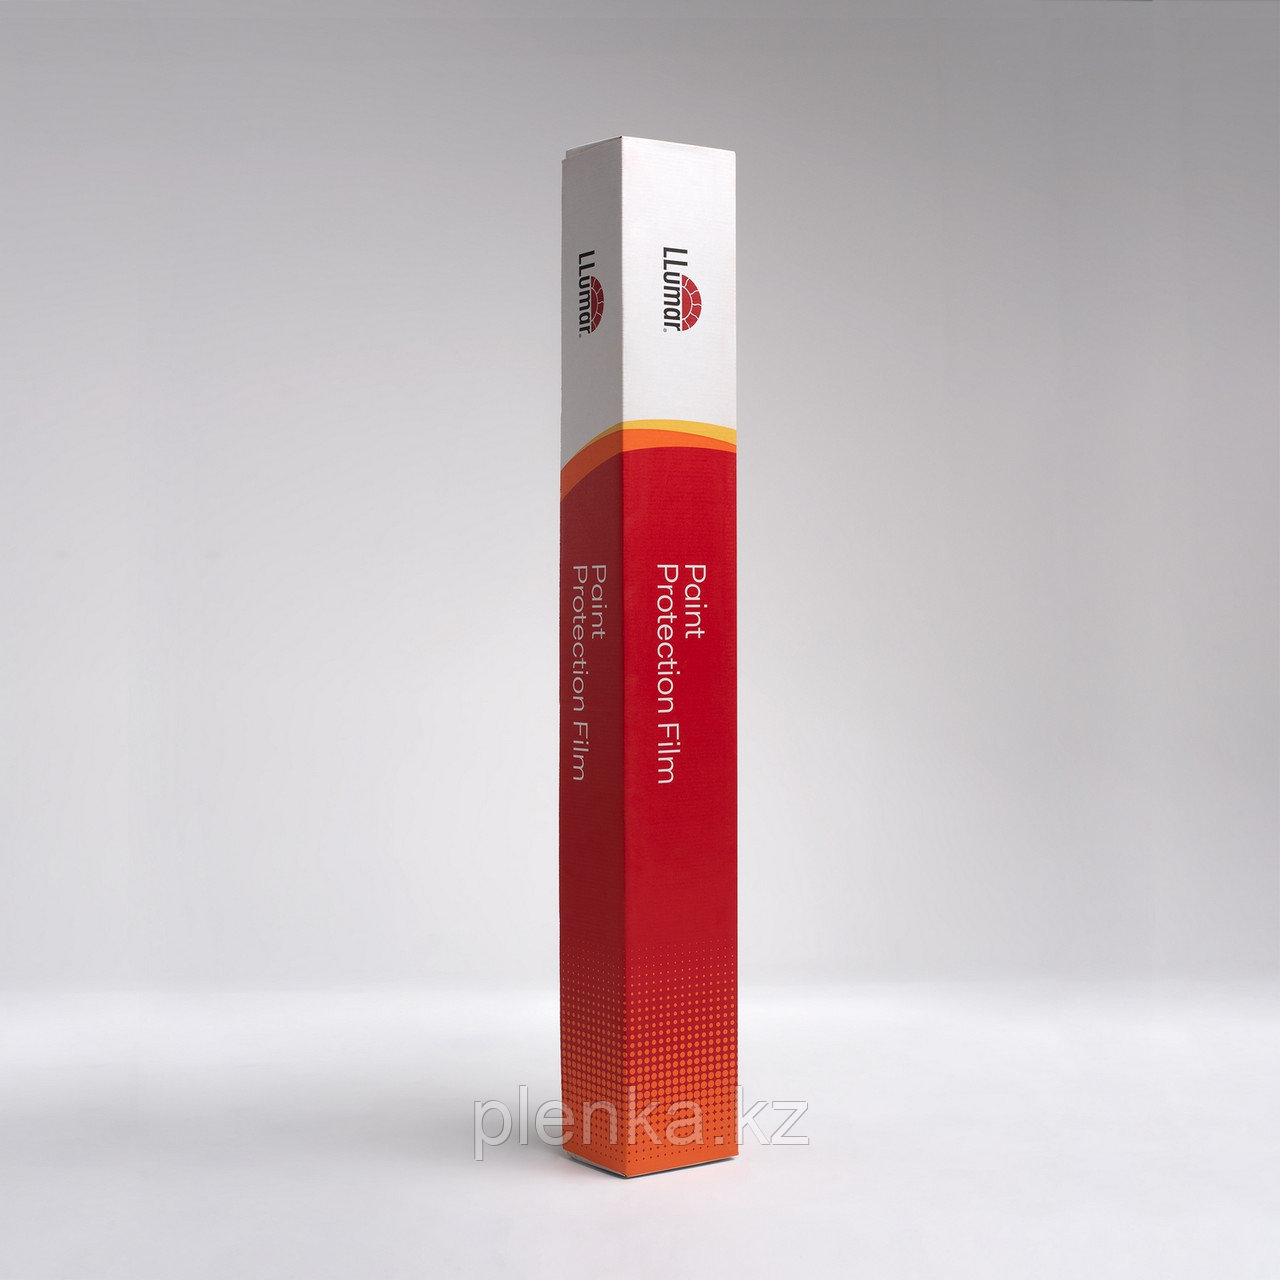 Полиуретановая антигравийная плёнка LLumar PPF Gloss, ширина 1,52, цена за 1 пог.м. (нарезка)